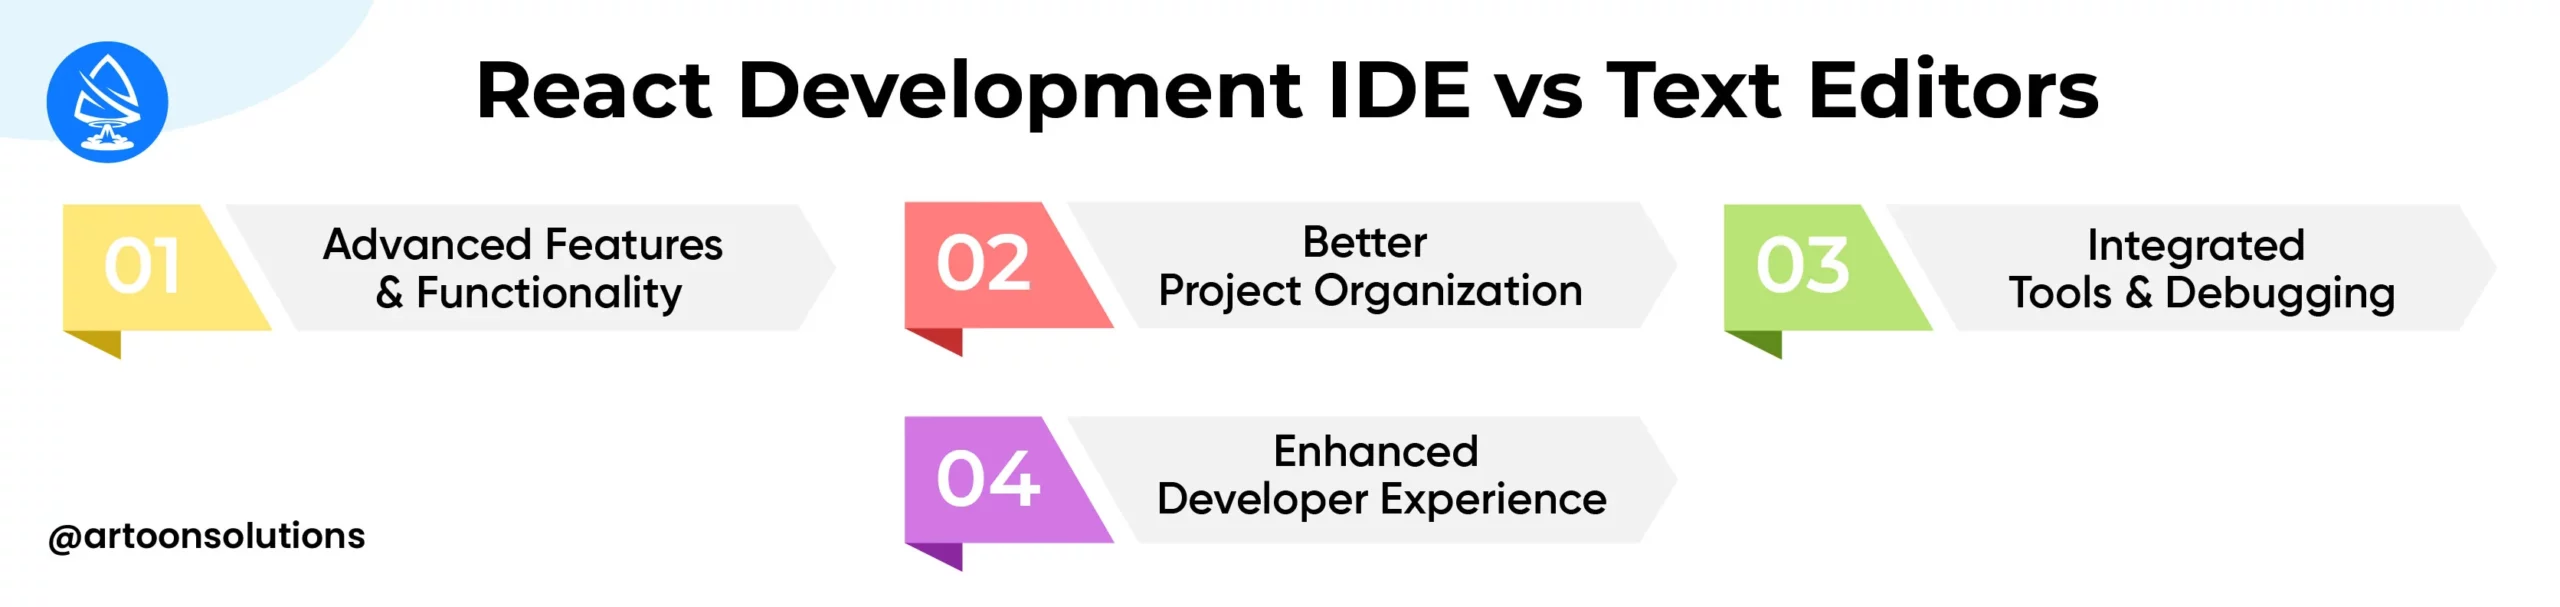 React Development IDE vs Text Editors